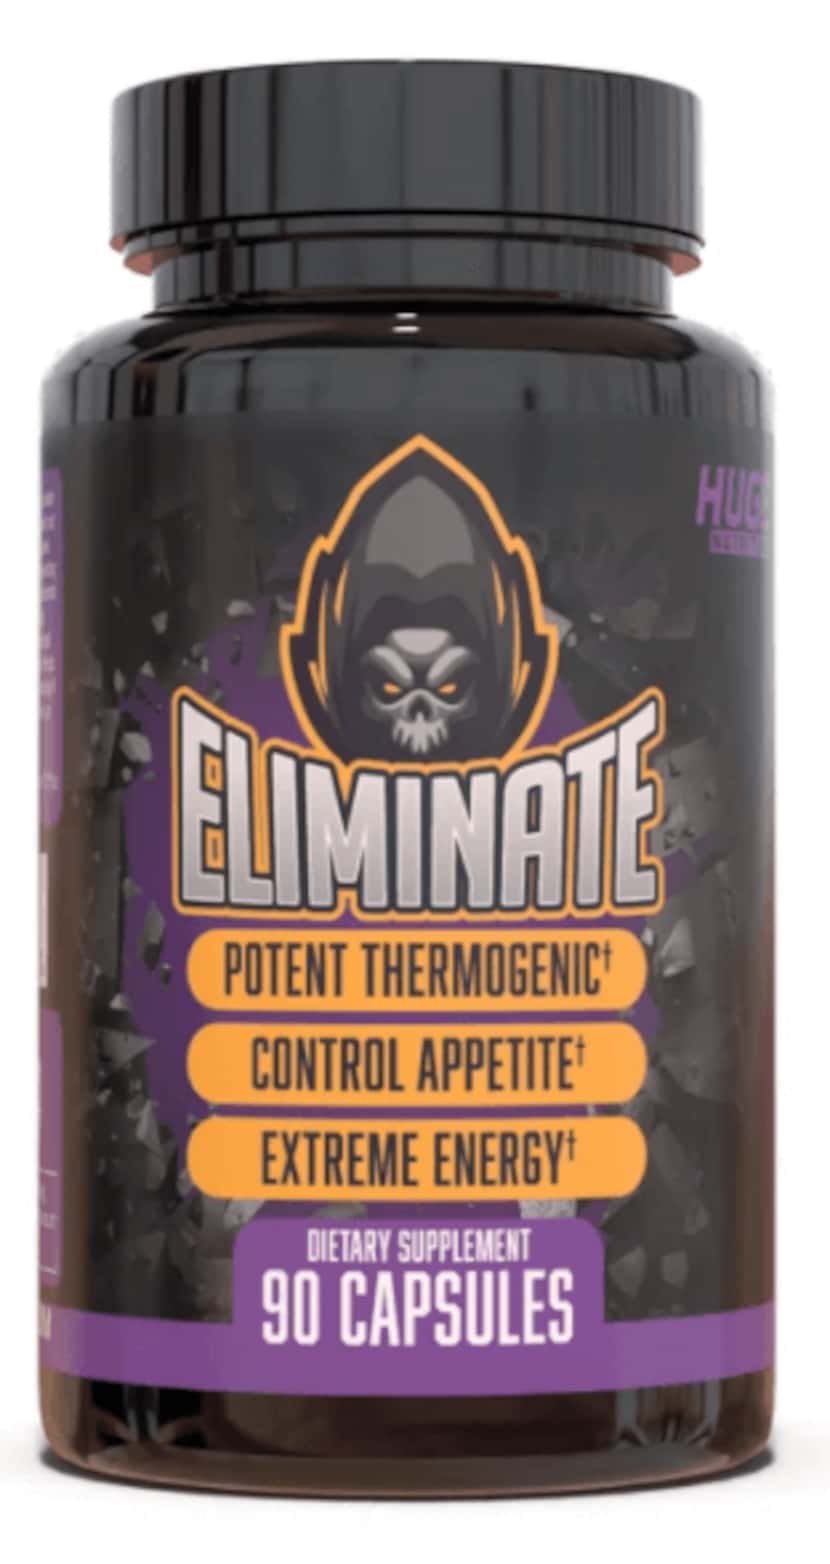 Eliminate capsules, purple and black label